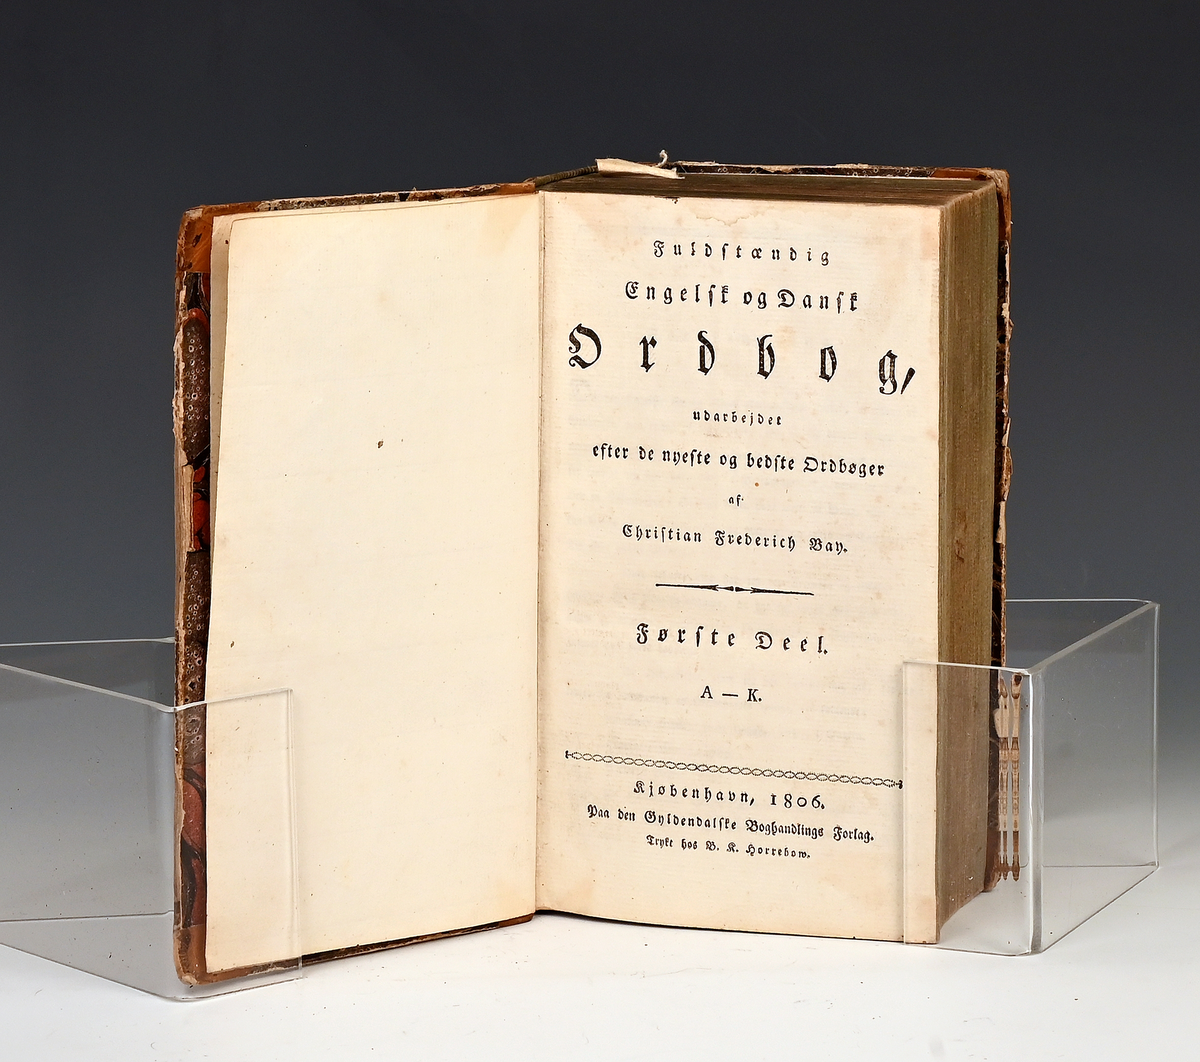 Prot:  "Engelsk og Dansk Ordbog I-II" av Chr. Fr. Bay. Kjøbenhavn 1806. I 2 bl. + 1235 s. II 1 bl. + 1237 s. 8 vo. Helskbd.

Første Deel